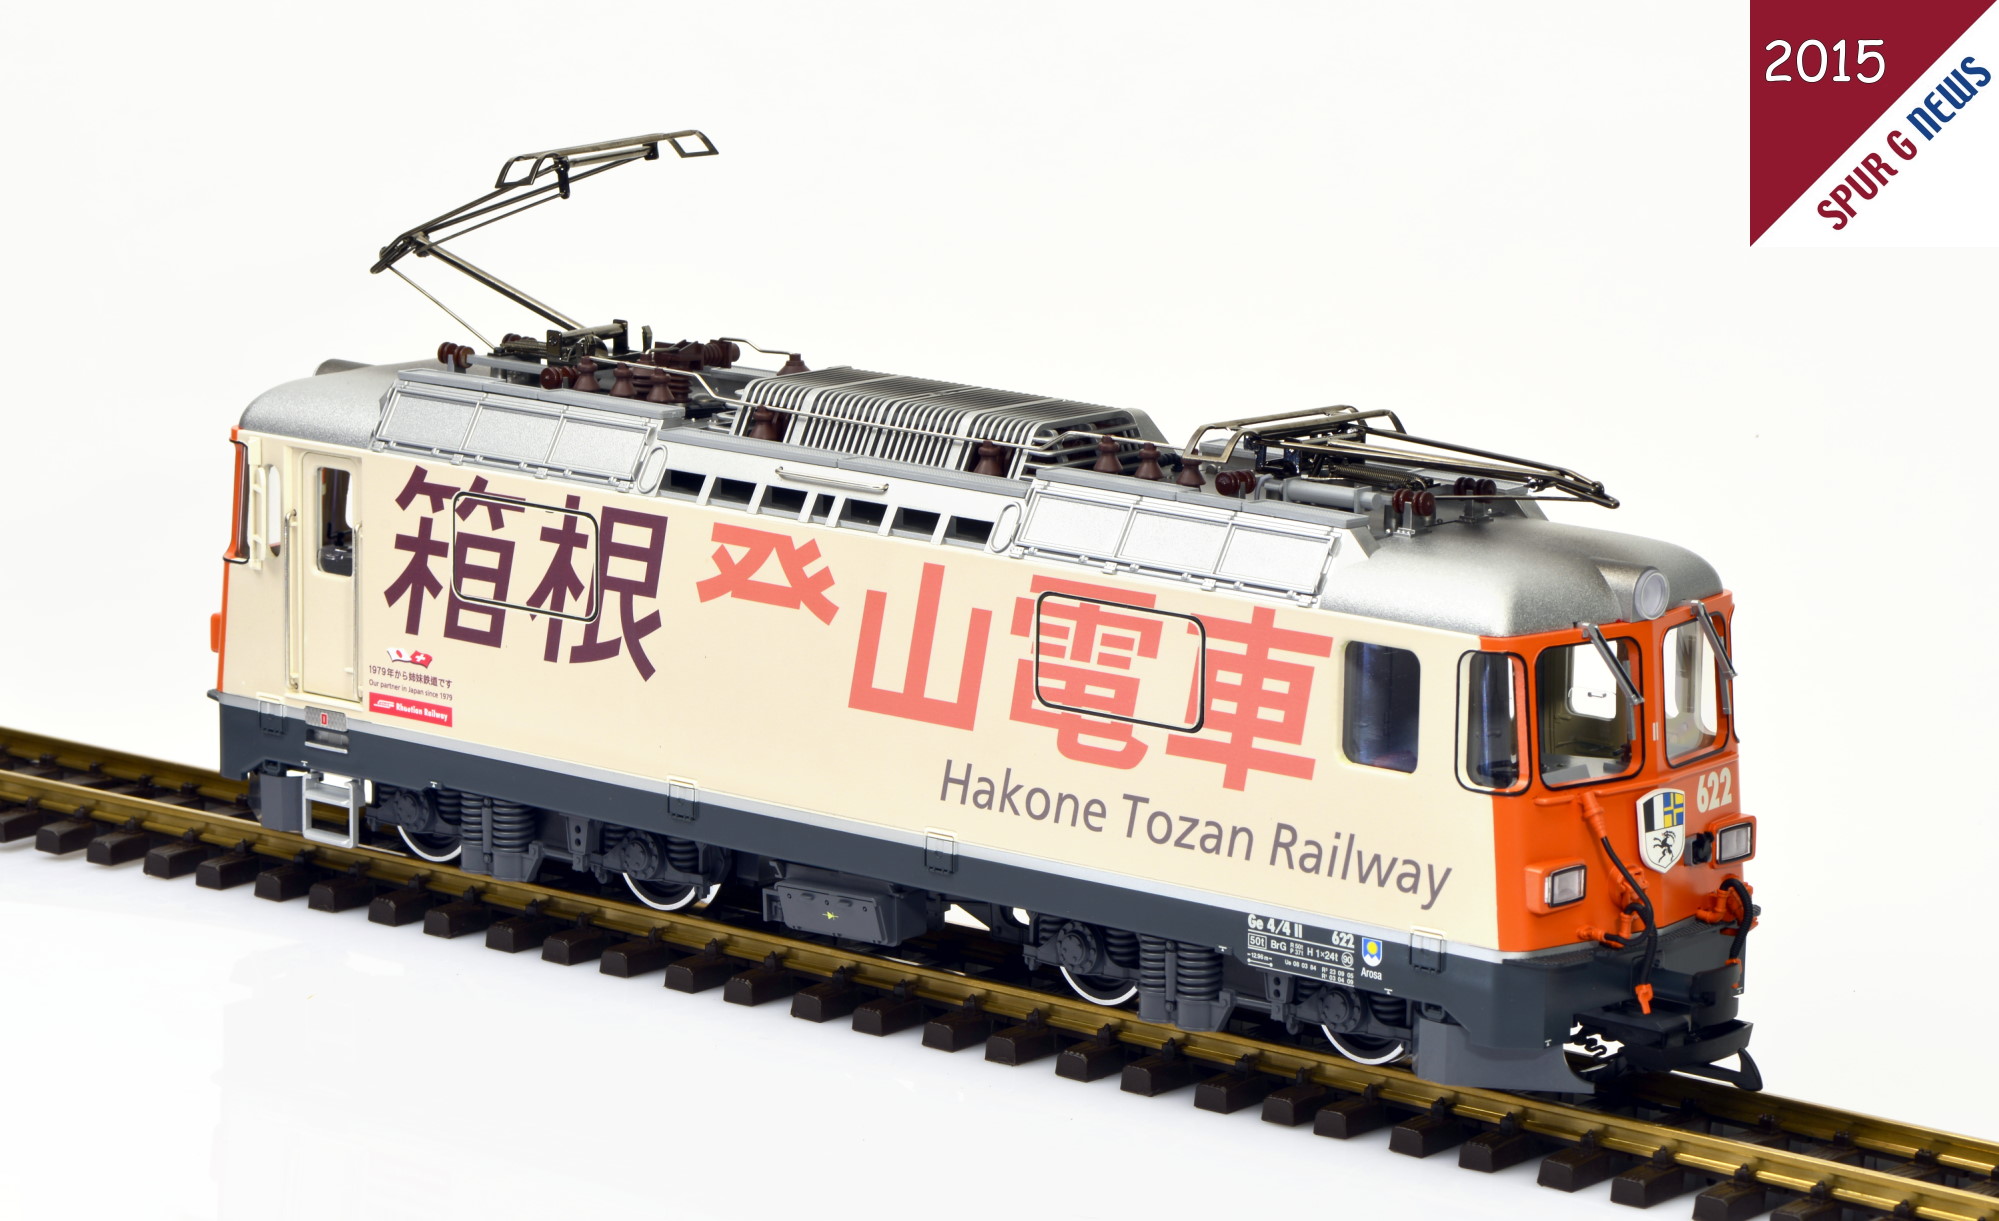 Auch diese Sonderlackierung - Hakone Tozan Railway - ist dem KISS Modellbahnservice wieder toll gelungen. Die japanische Schrift in Braun und Orange auf dem cremefarbigen Grund kommt bei der Lokomotive hervorragend zur Geltung. Beide Fronten der Lok wurden in Ursprungsrot gehalten